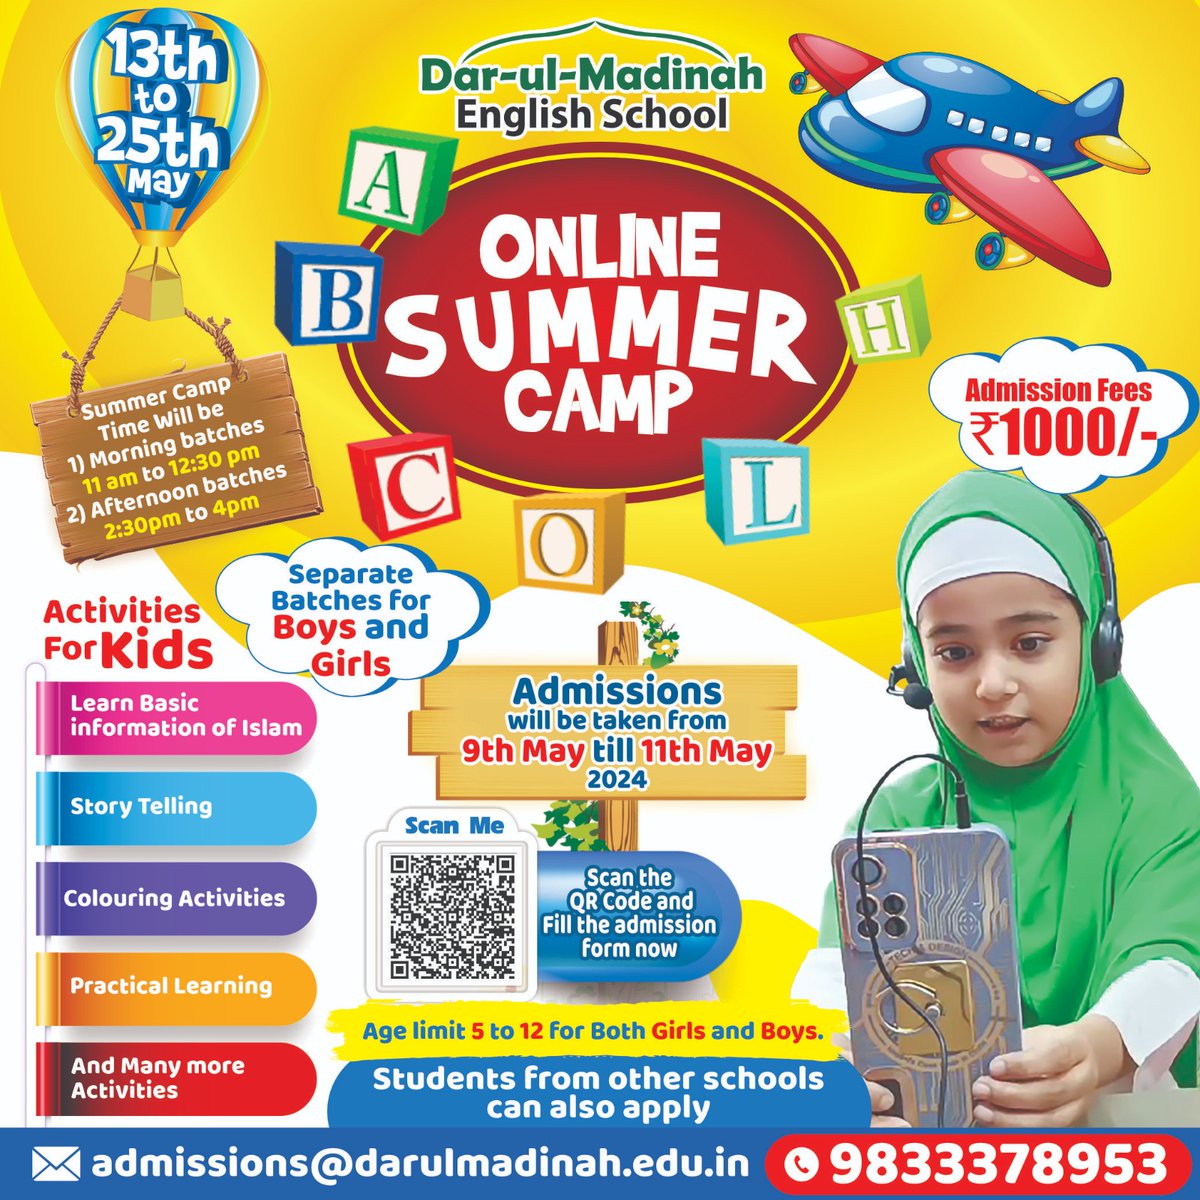 Online summer camp
.
.
.
.
#summercamp #onlinesummercamp #admissionsopen #admissions #education #school #kids #DarulMadinah